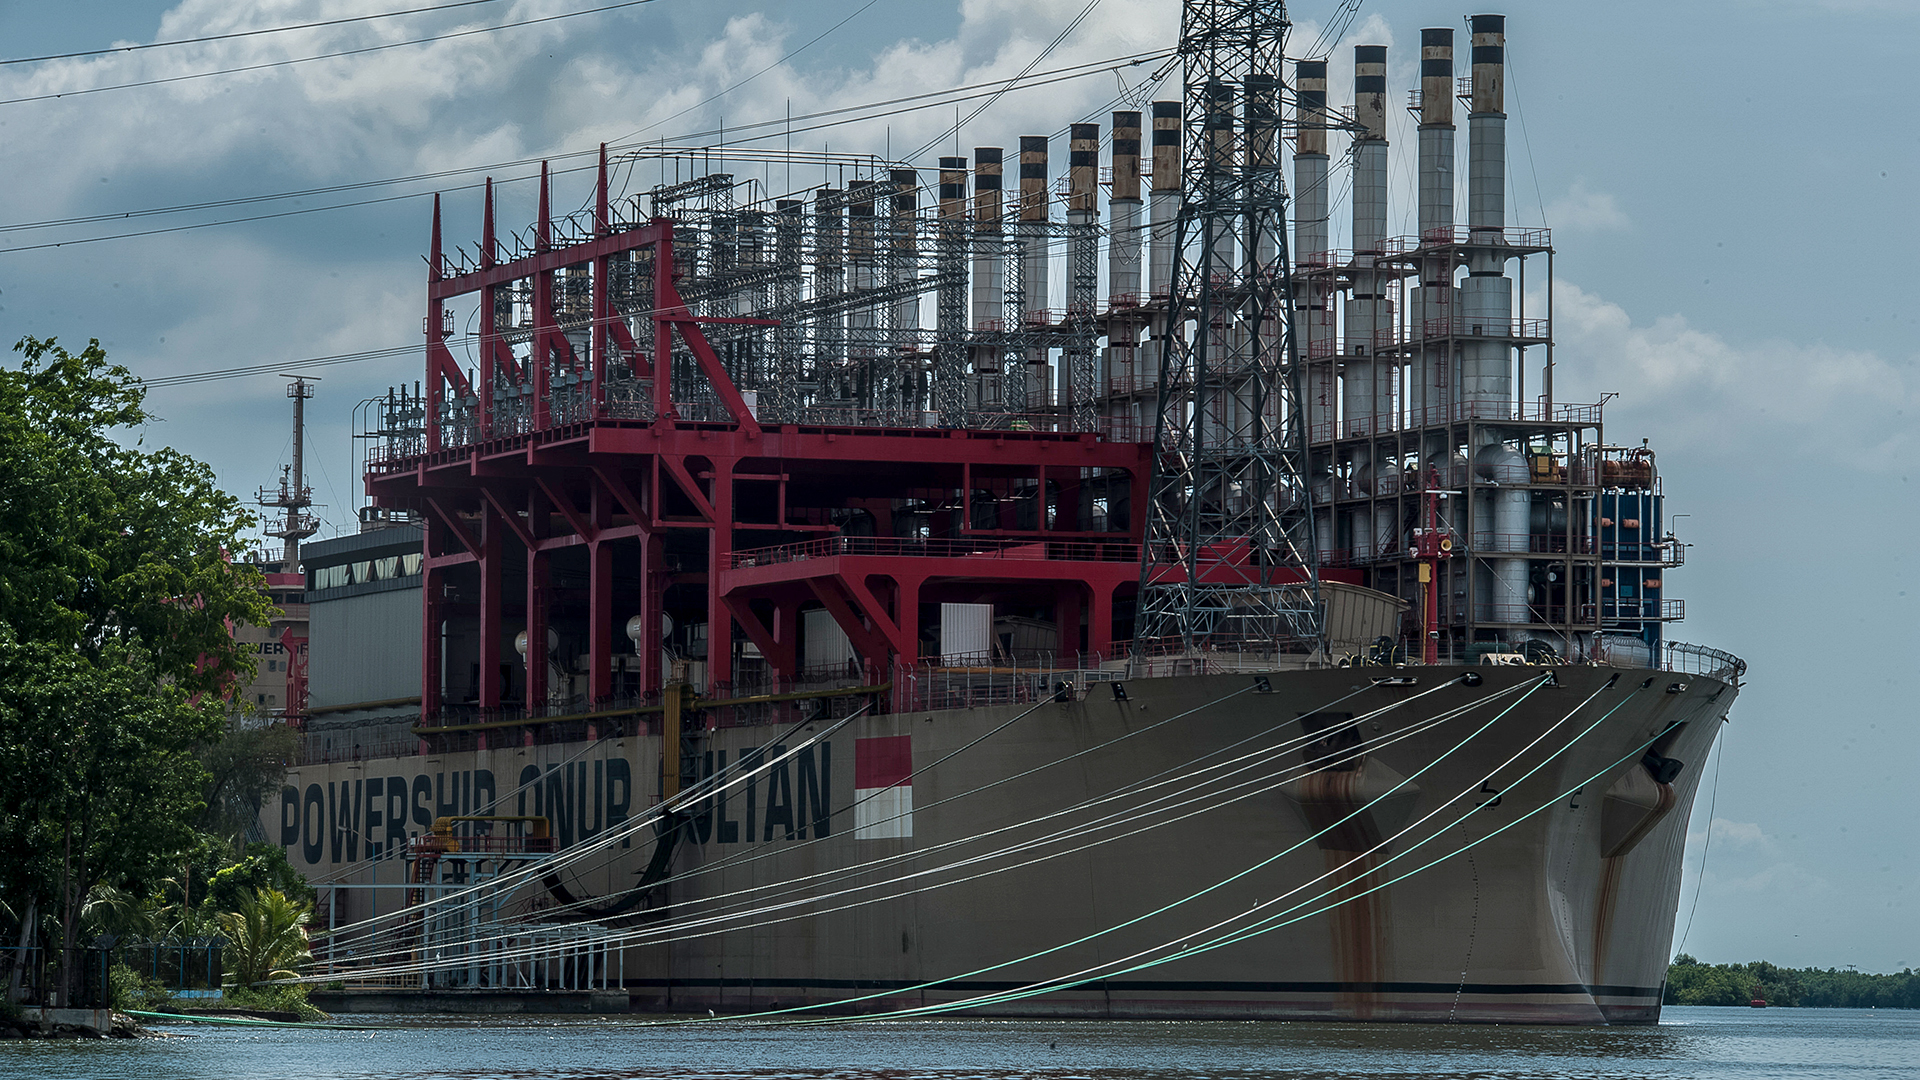 Das Schiffskraftwerk "Powership Onur Sultan" | picture alliance / NurPhoto